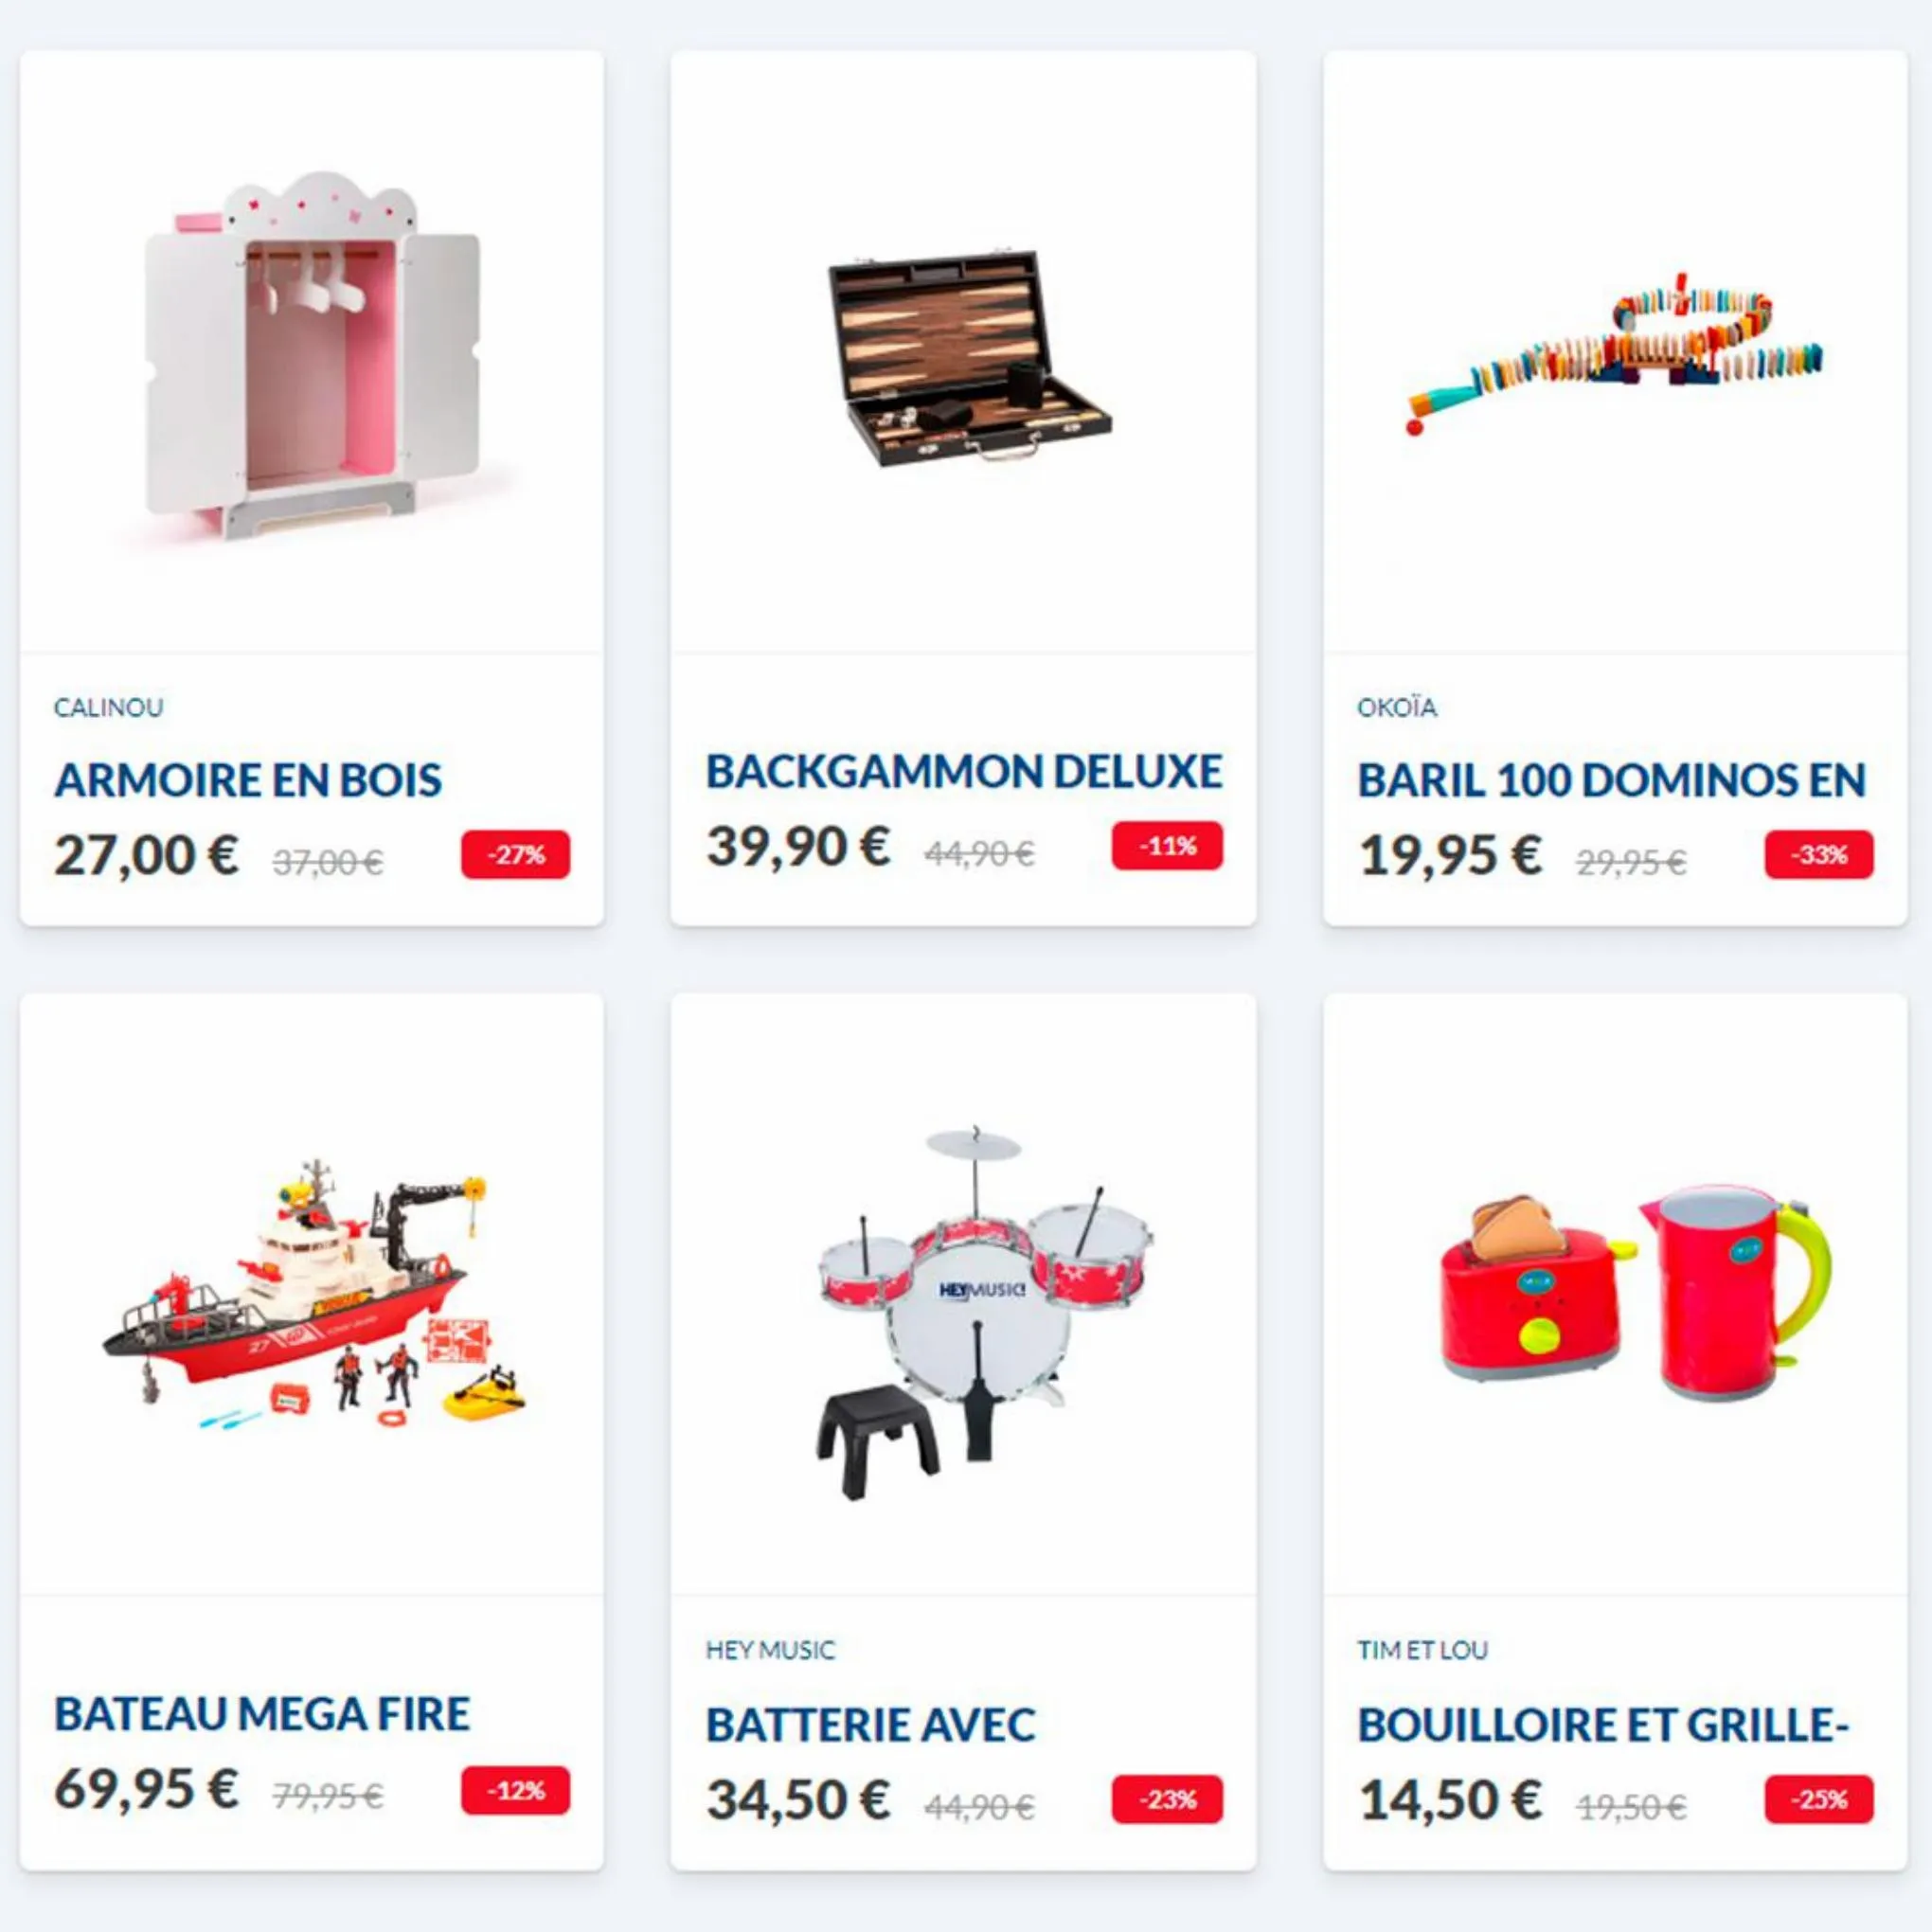 Catalogue Des prix imbattables dans tous les magasins de jouets, page 00006